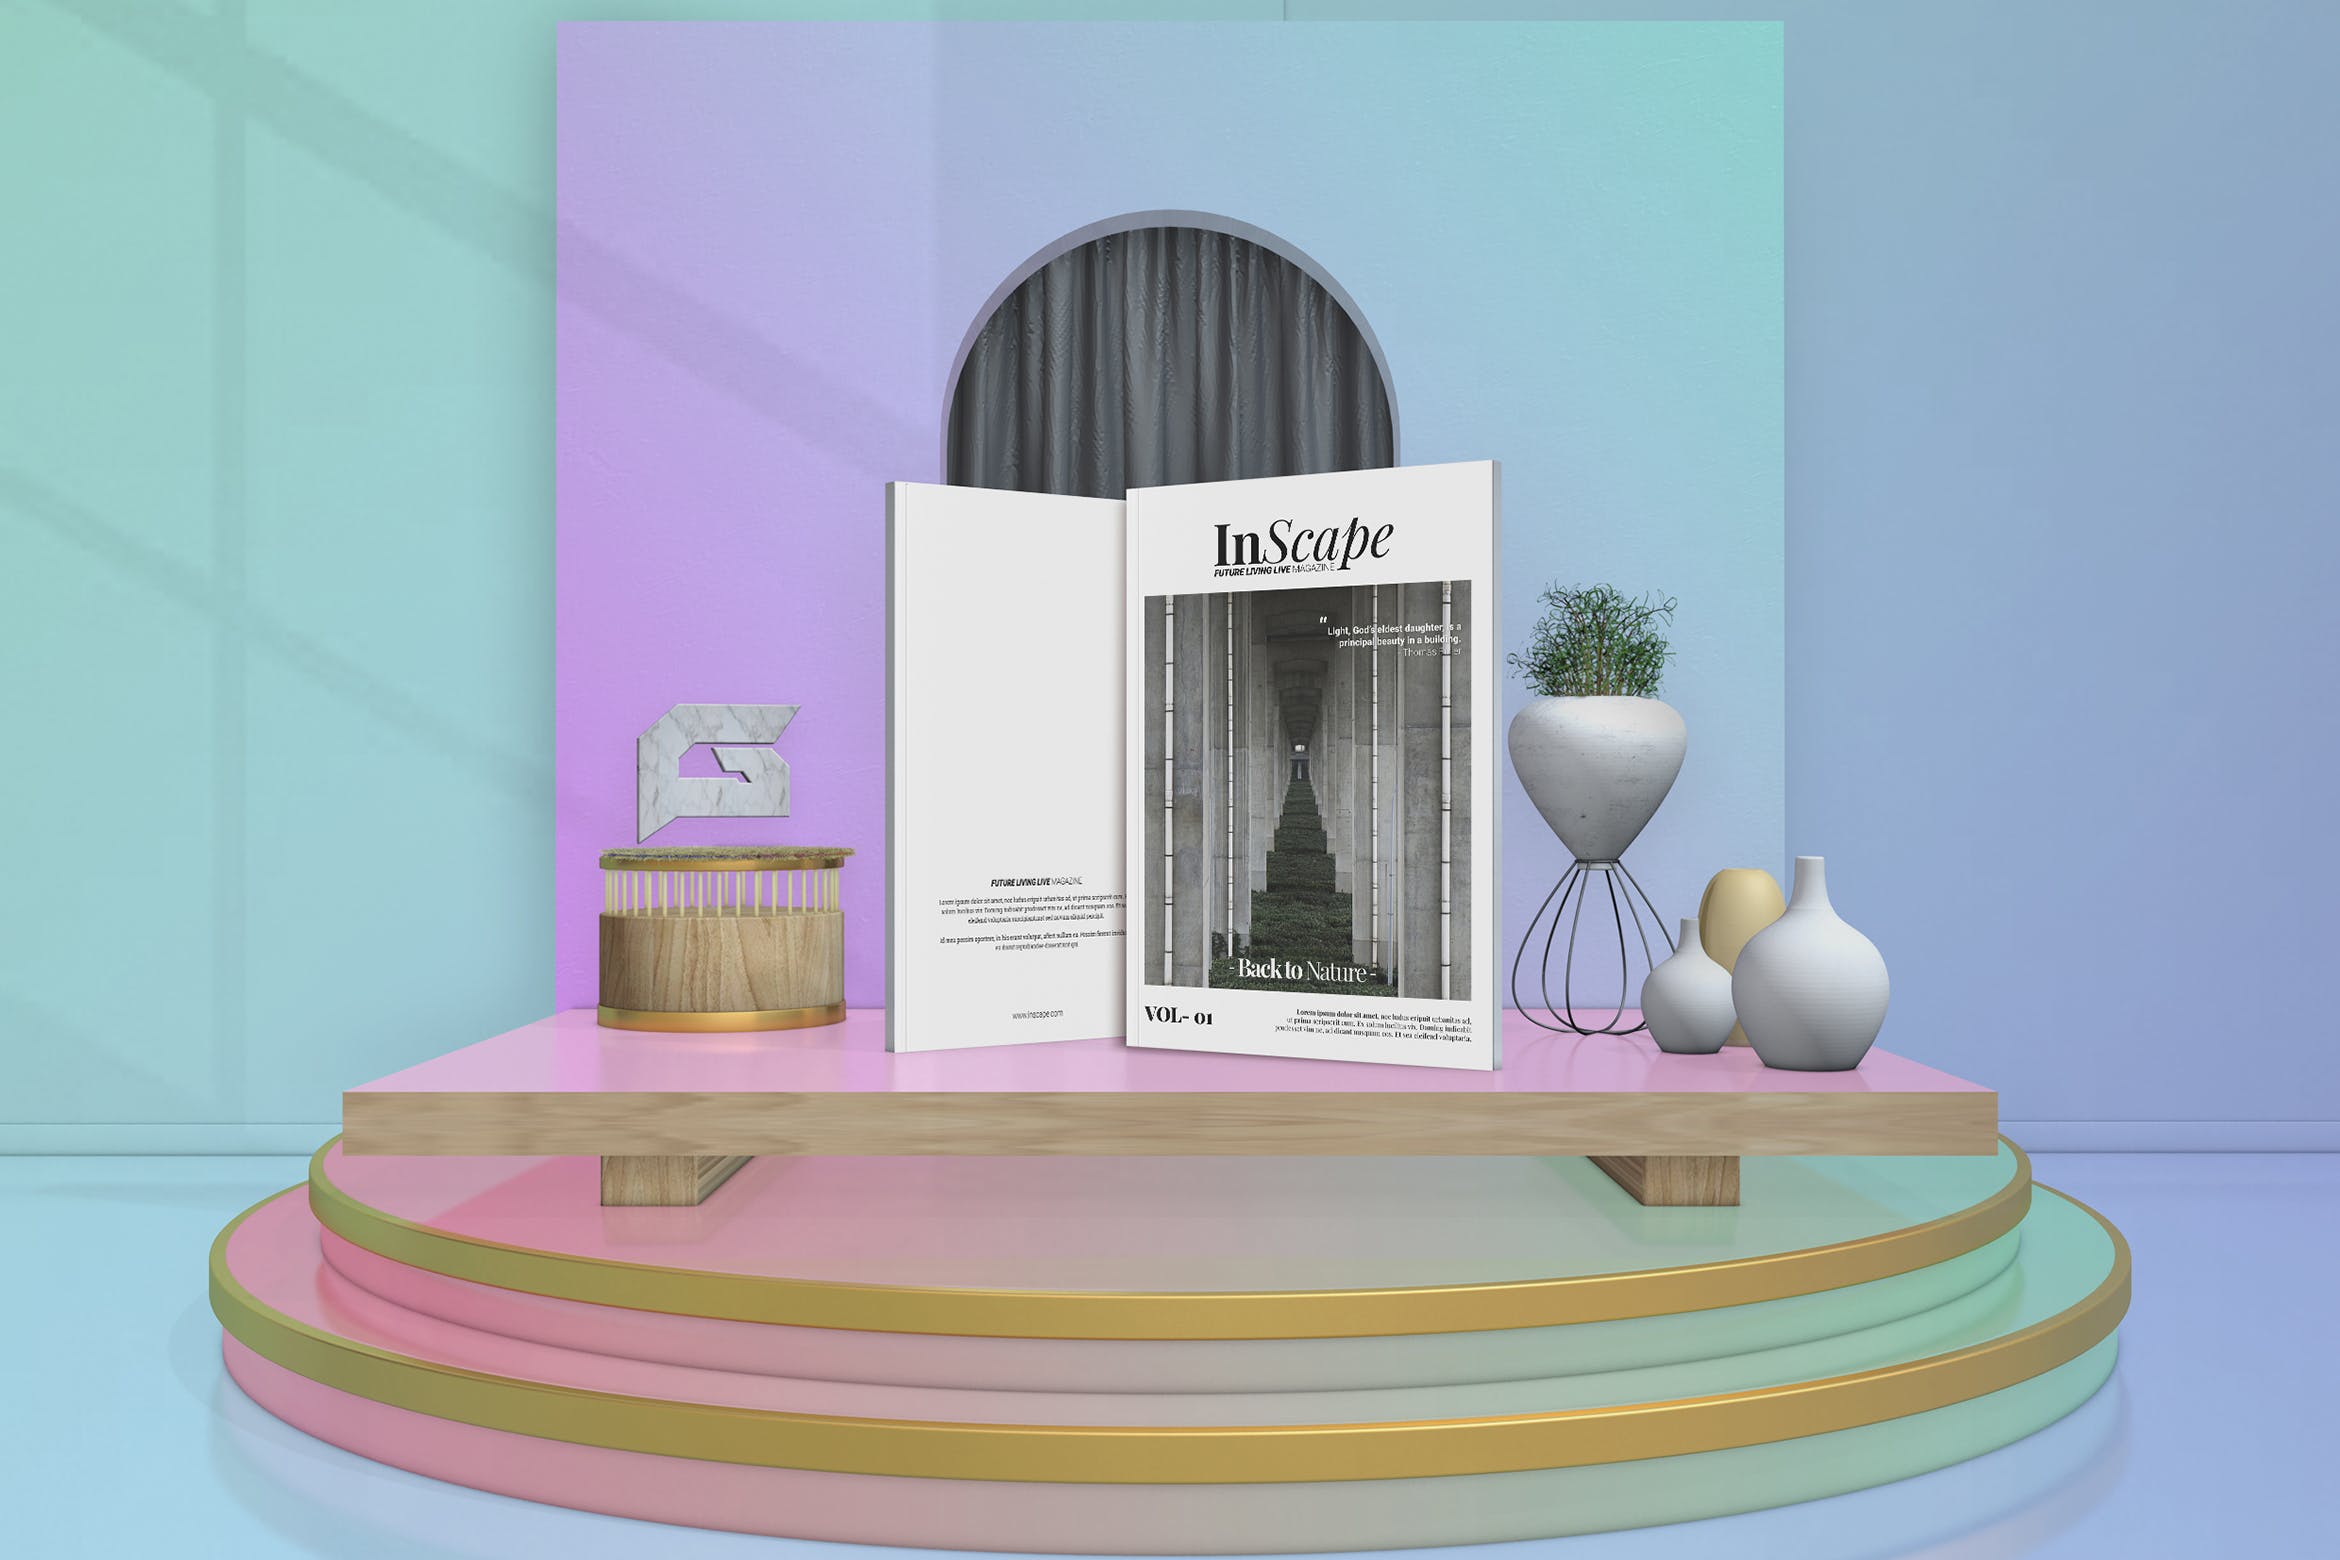 室内设计主题16设计网精选杂志排版设计模板 Inscape Interior Magazine插图